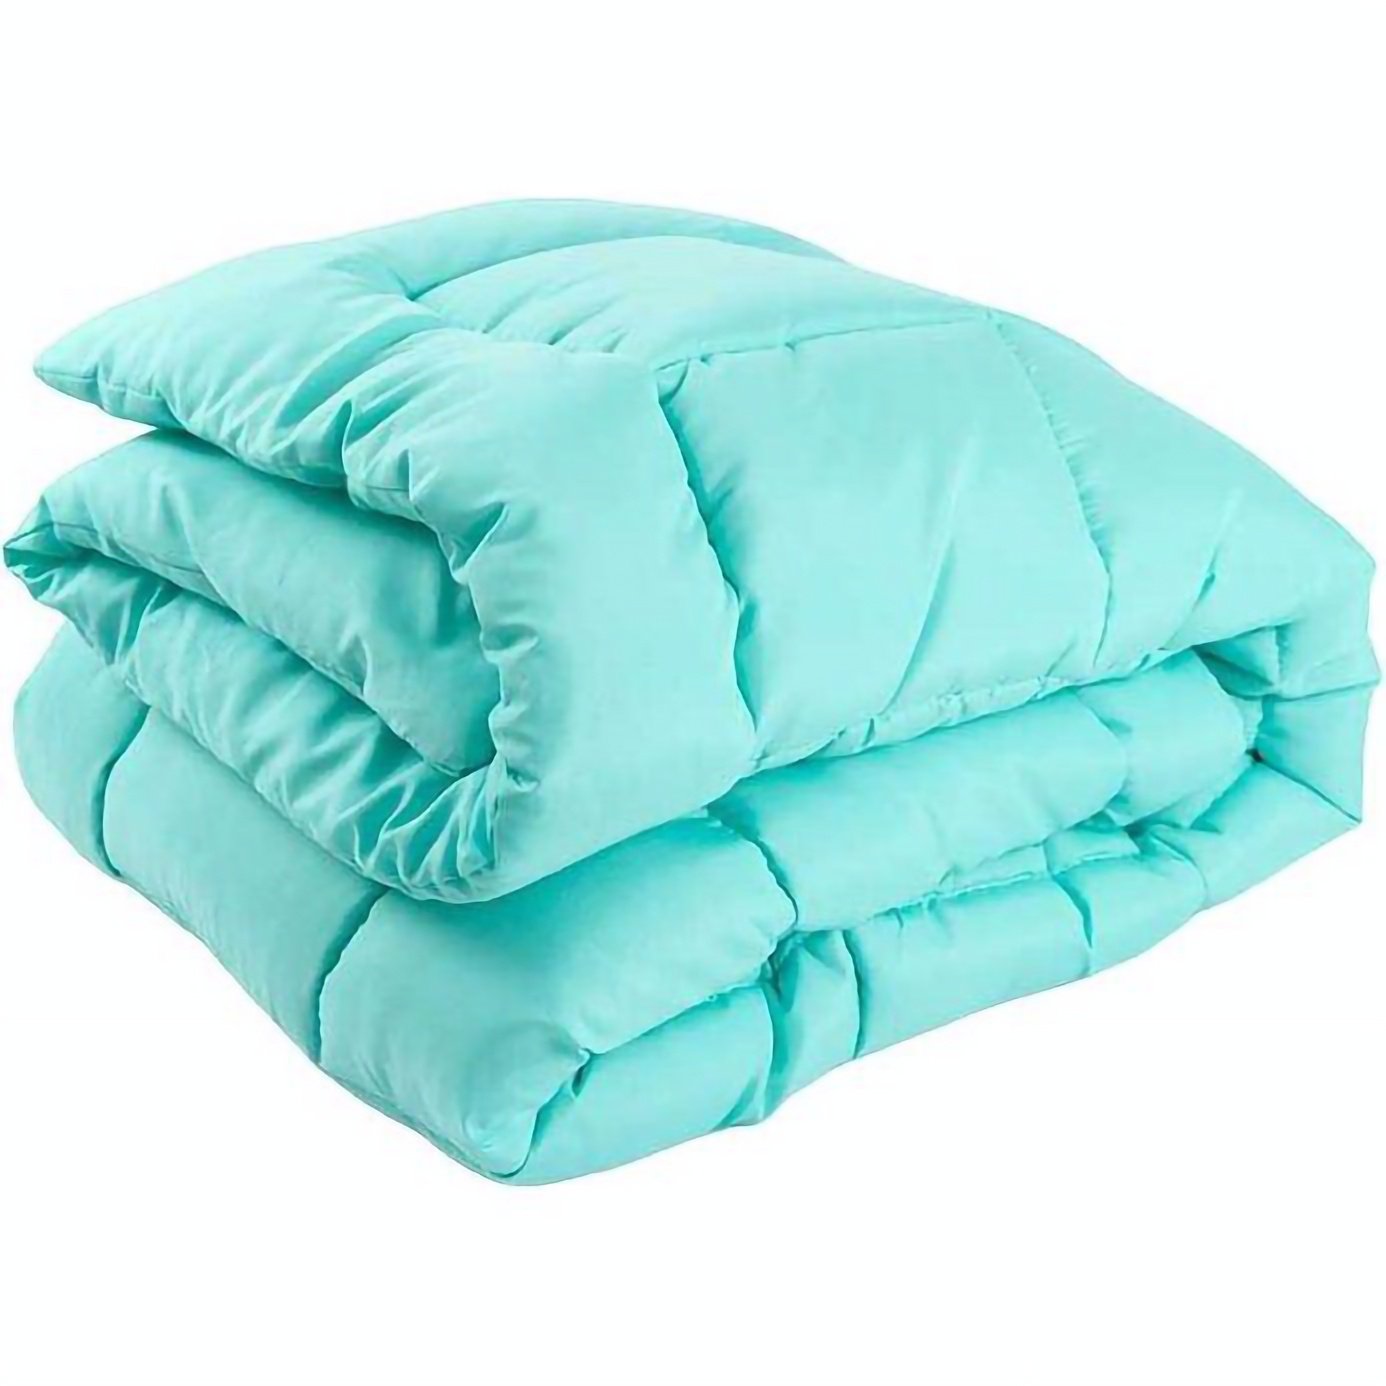 Набор силиконовый Руно Mint: одеяло 220х200 см + подушка 70х50 см, 2 шт., мятный (925.52_Mint) - фото 2